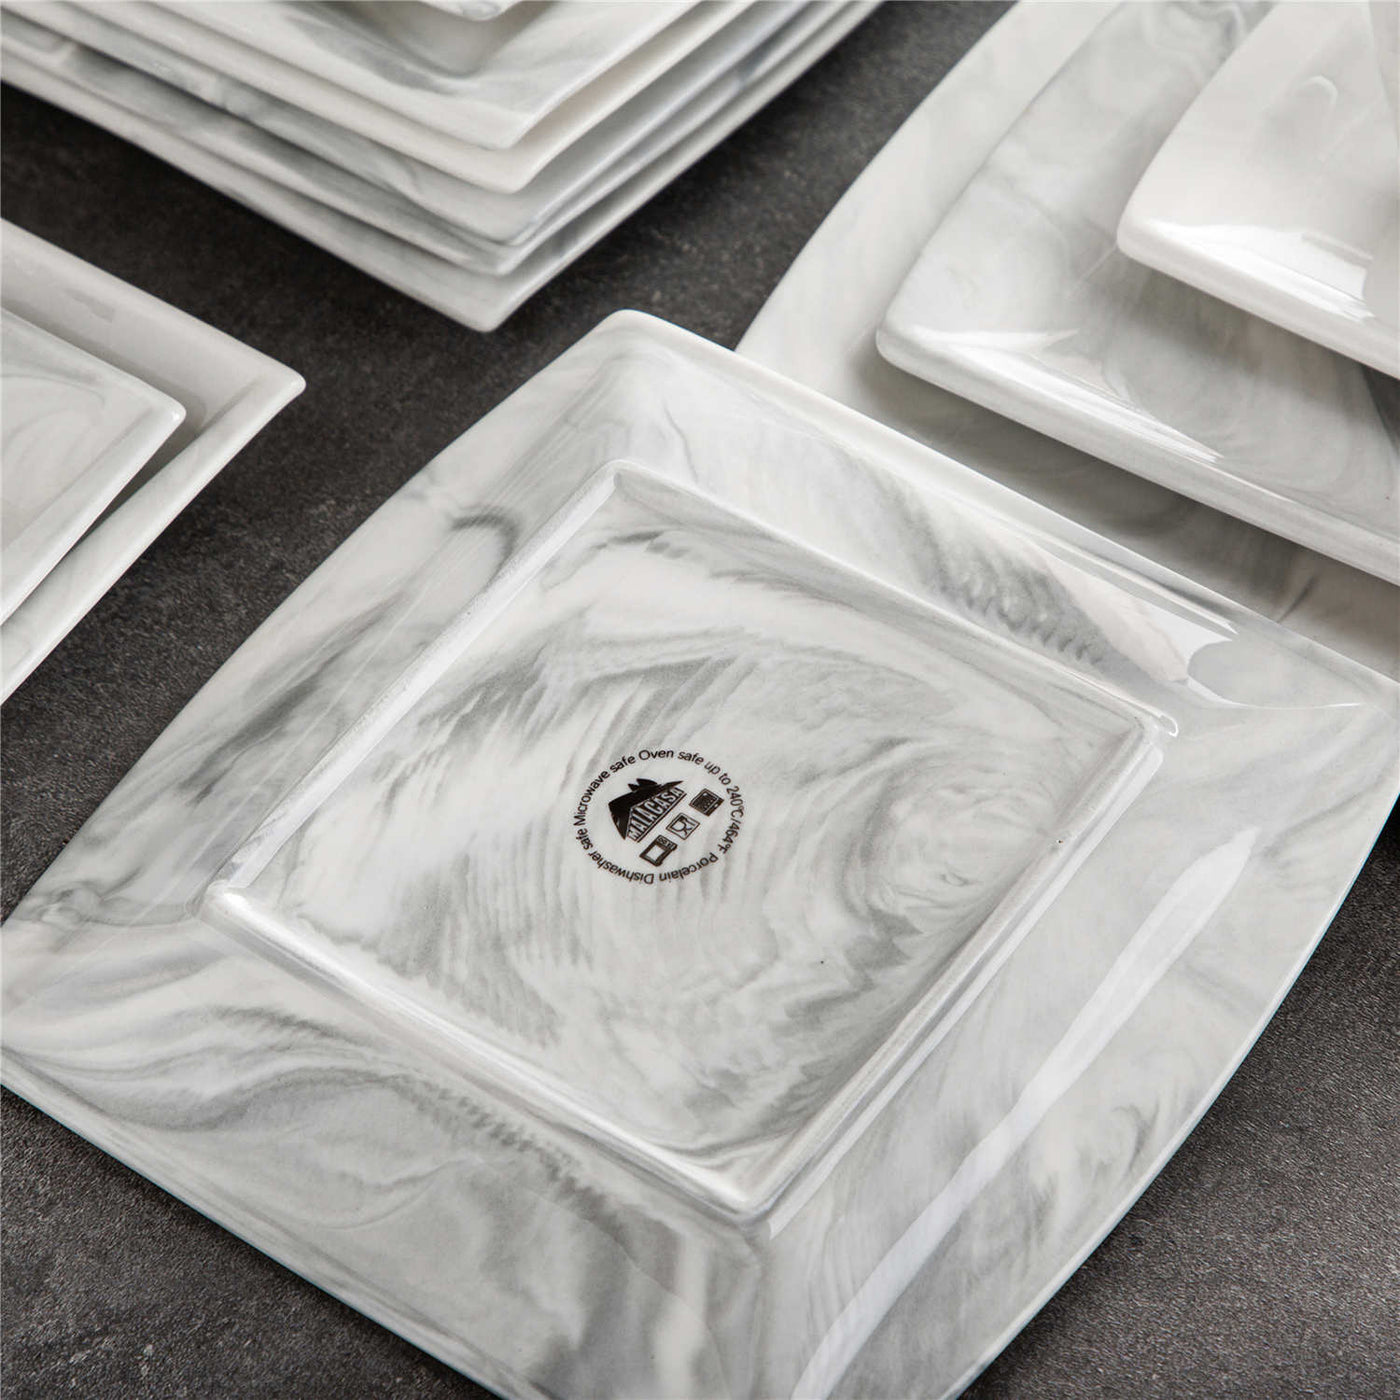 Blance Marble Grey 32 Piece Dinnerware Set